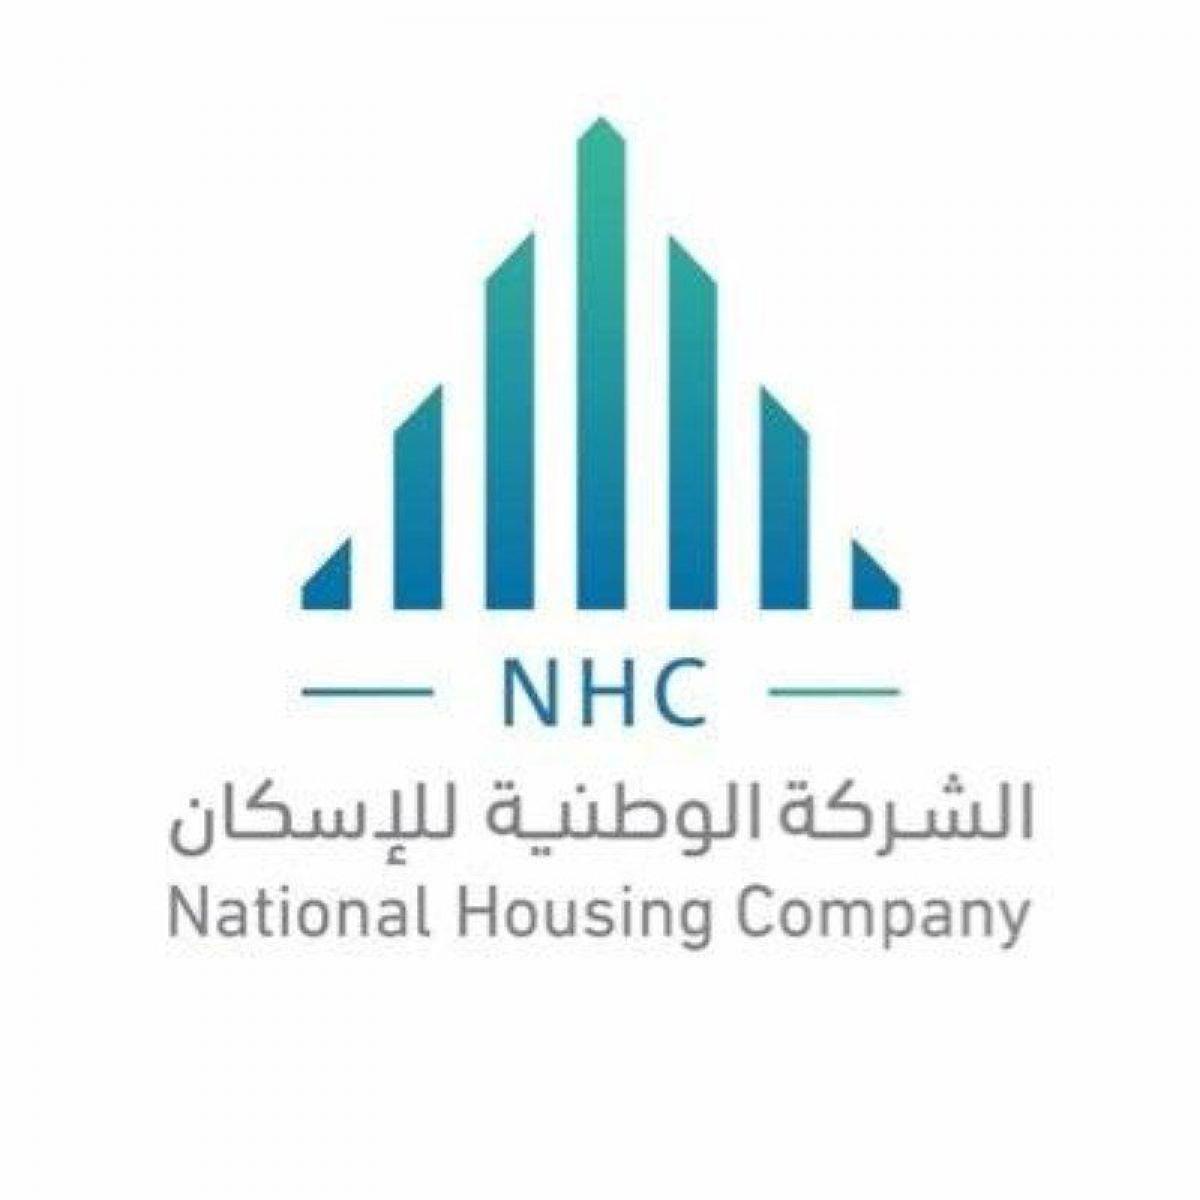 مذكرة تفاهم بين الشركة الوطنية للإسكان والهيئة السعودية